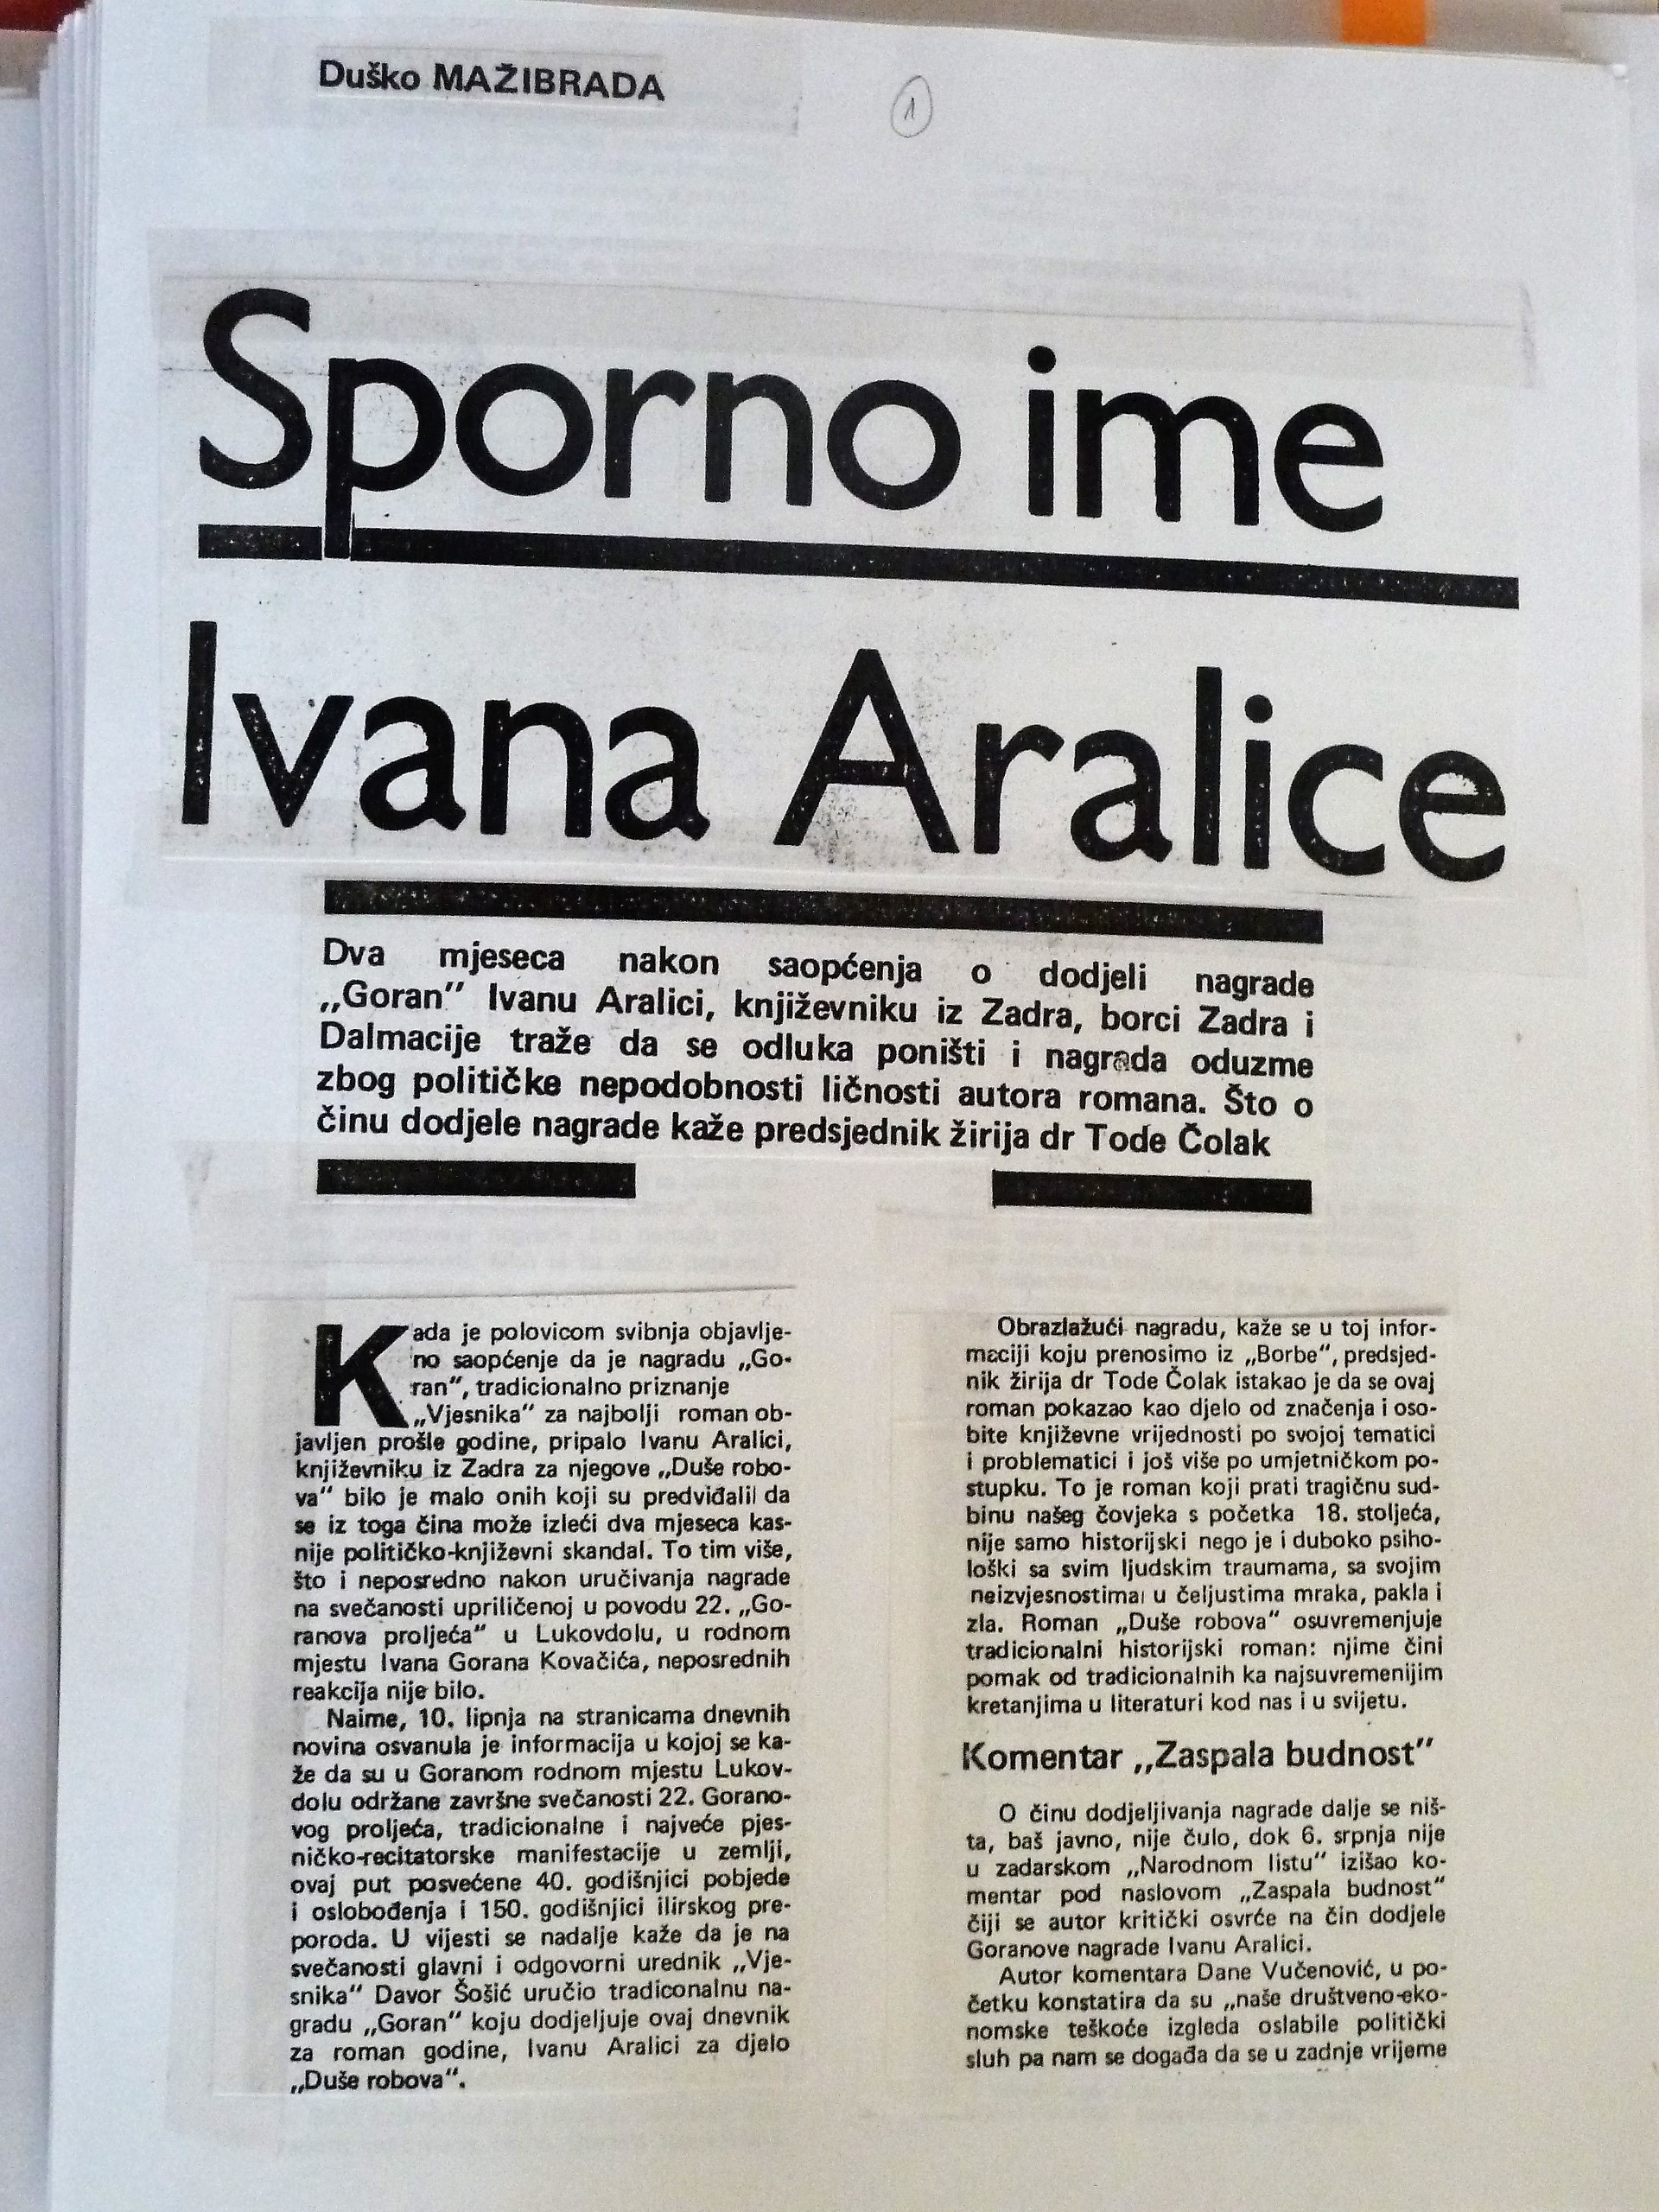 Isječak naziva Sporno ime Ivana Aralice, autora Duška Manižibrada, Nedjeljna Dalmacija, 21. srpnja 1985. 